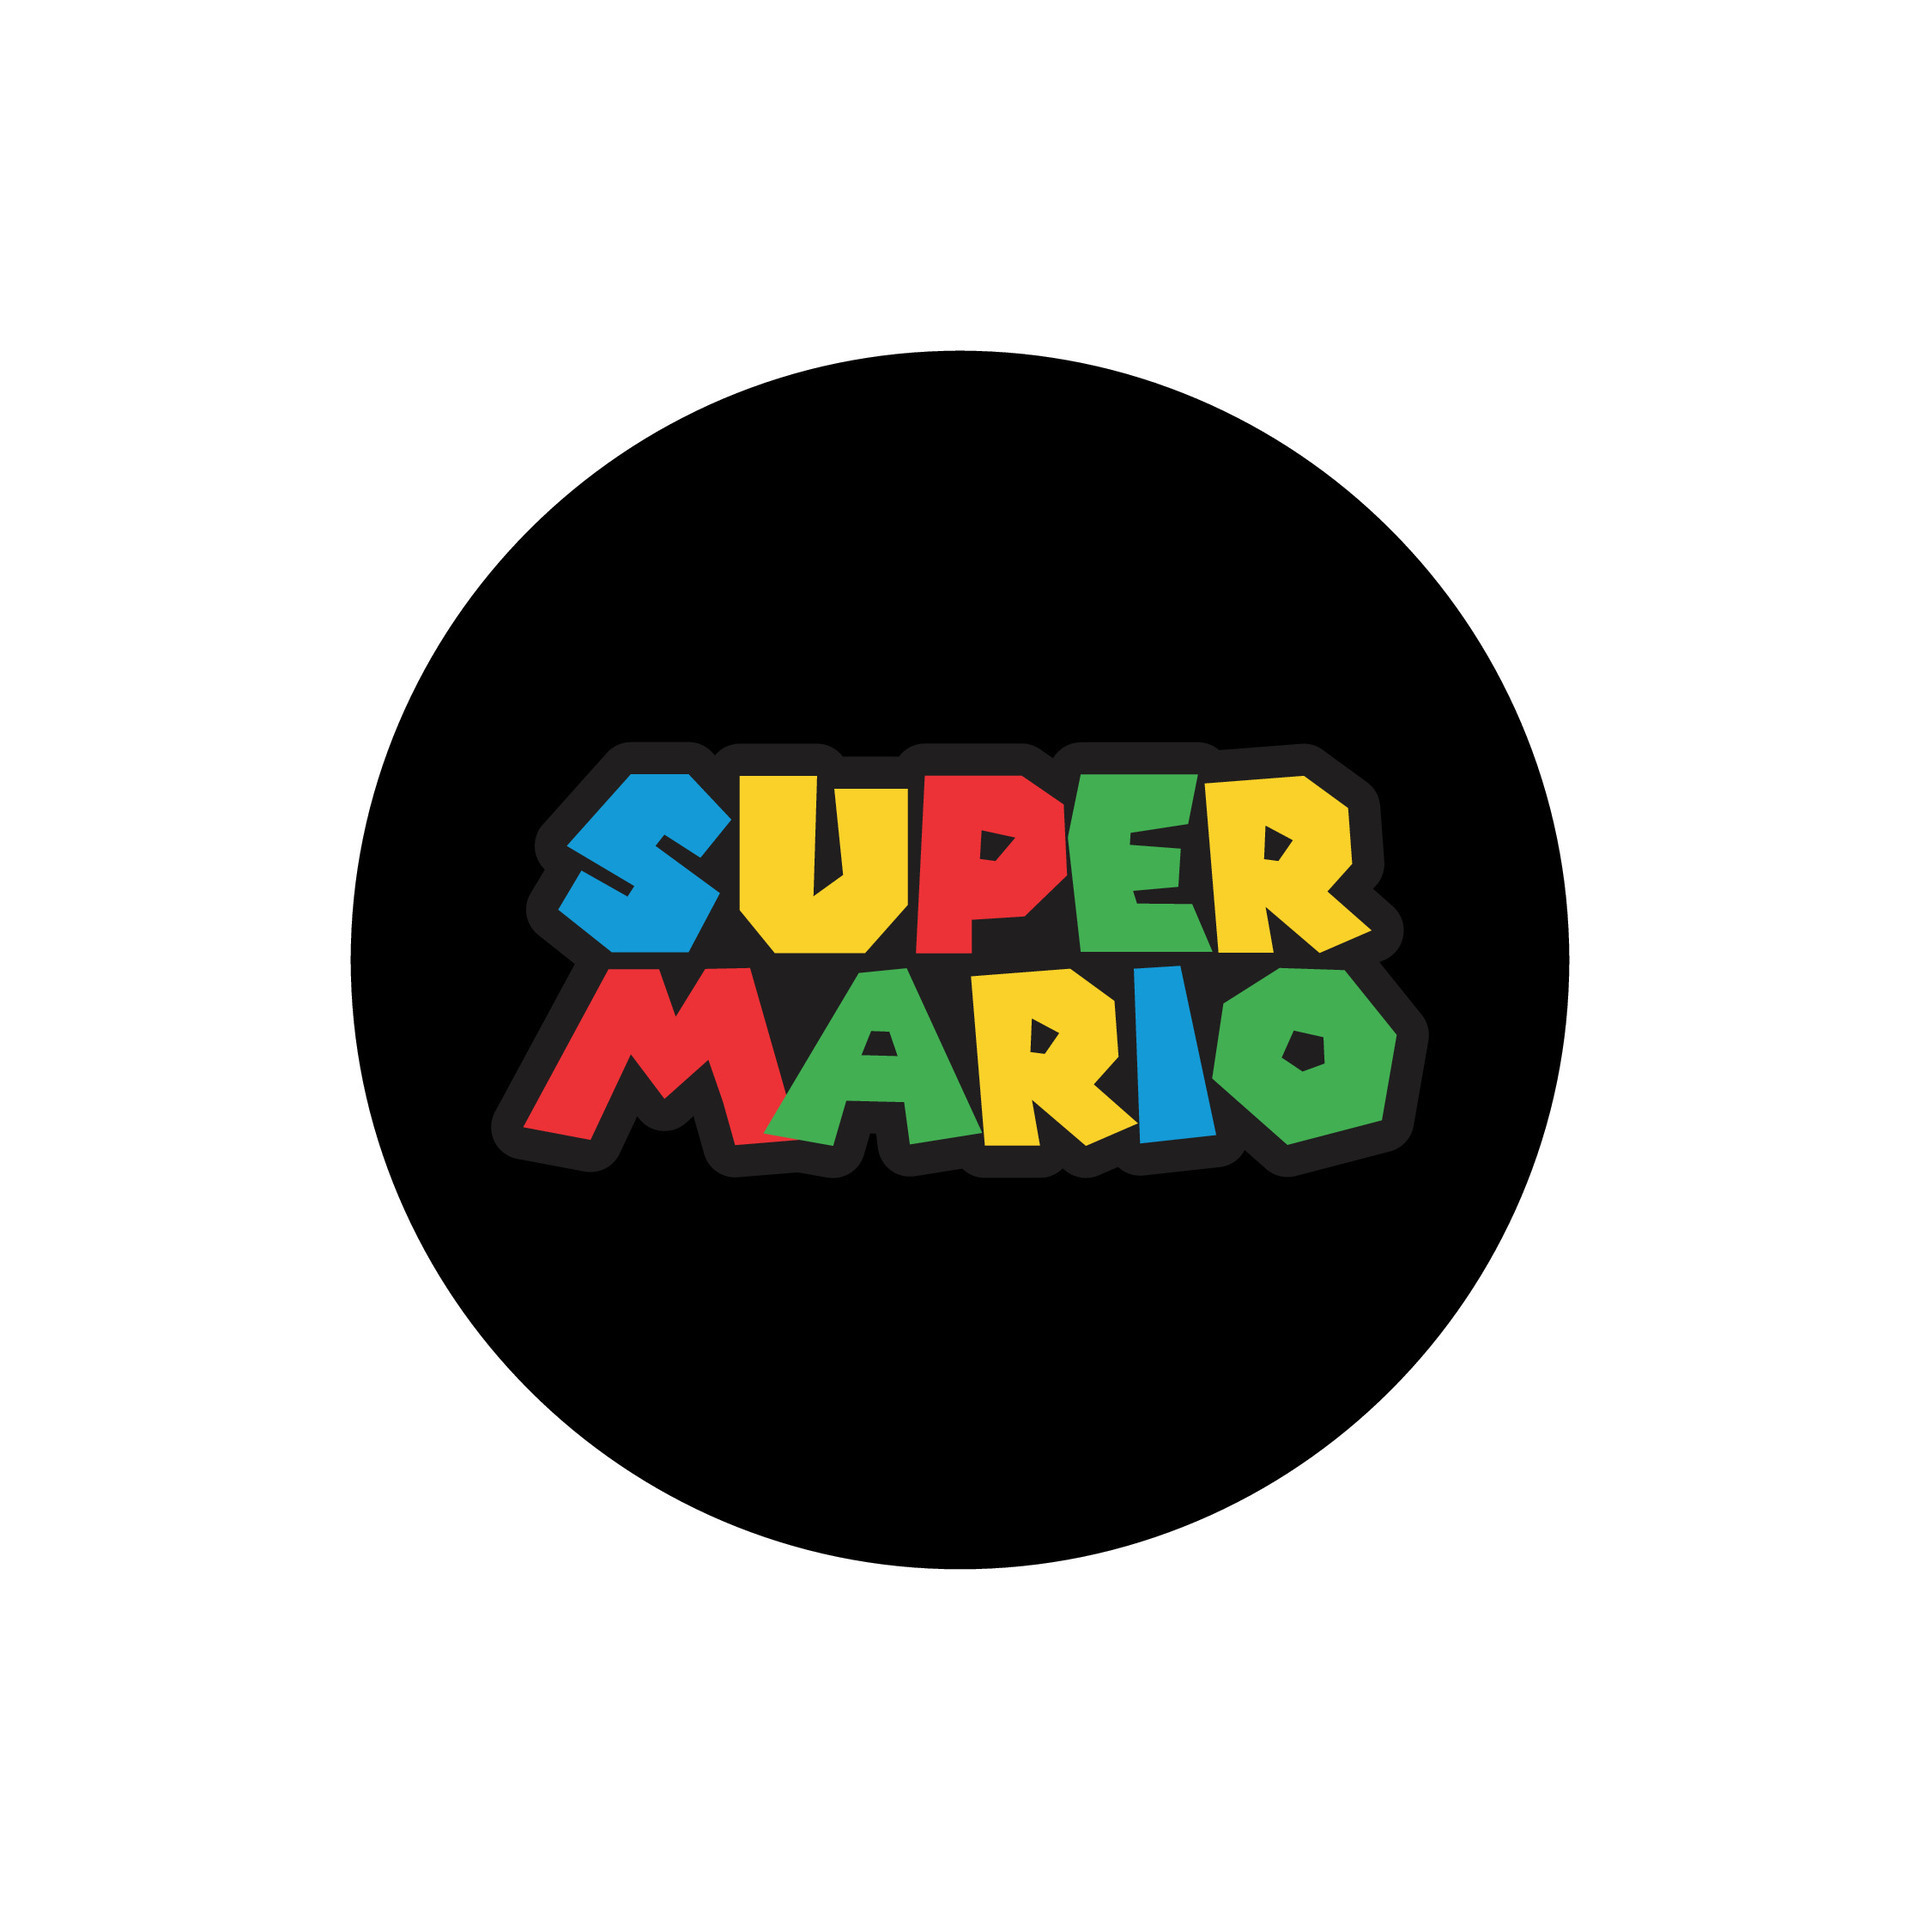 Super Mario editorial logo vector 25270794 Vector Art at Vecteezy